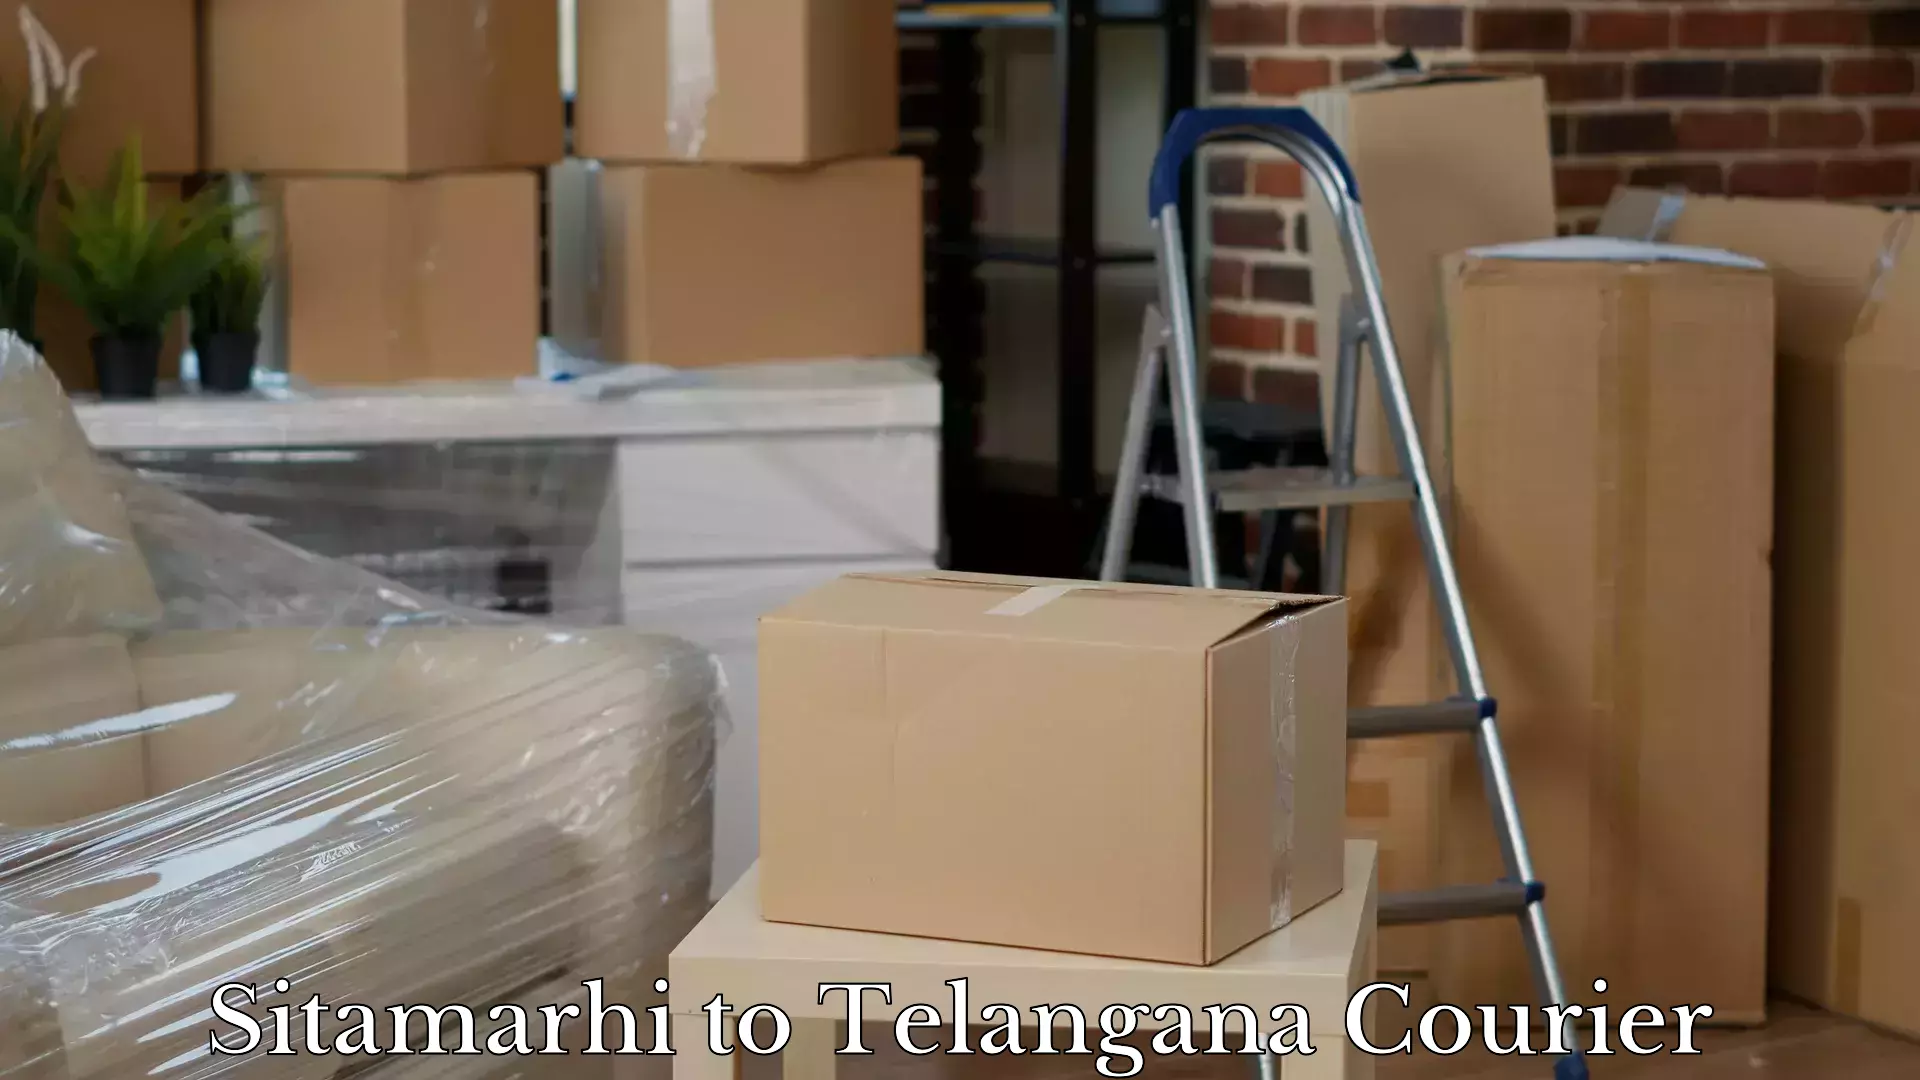 Baggage delivery management Sitamarhi to Kothagudem